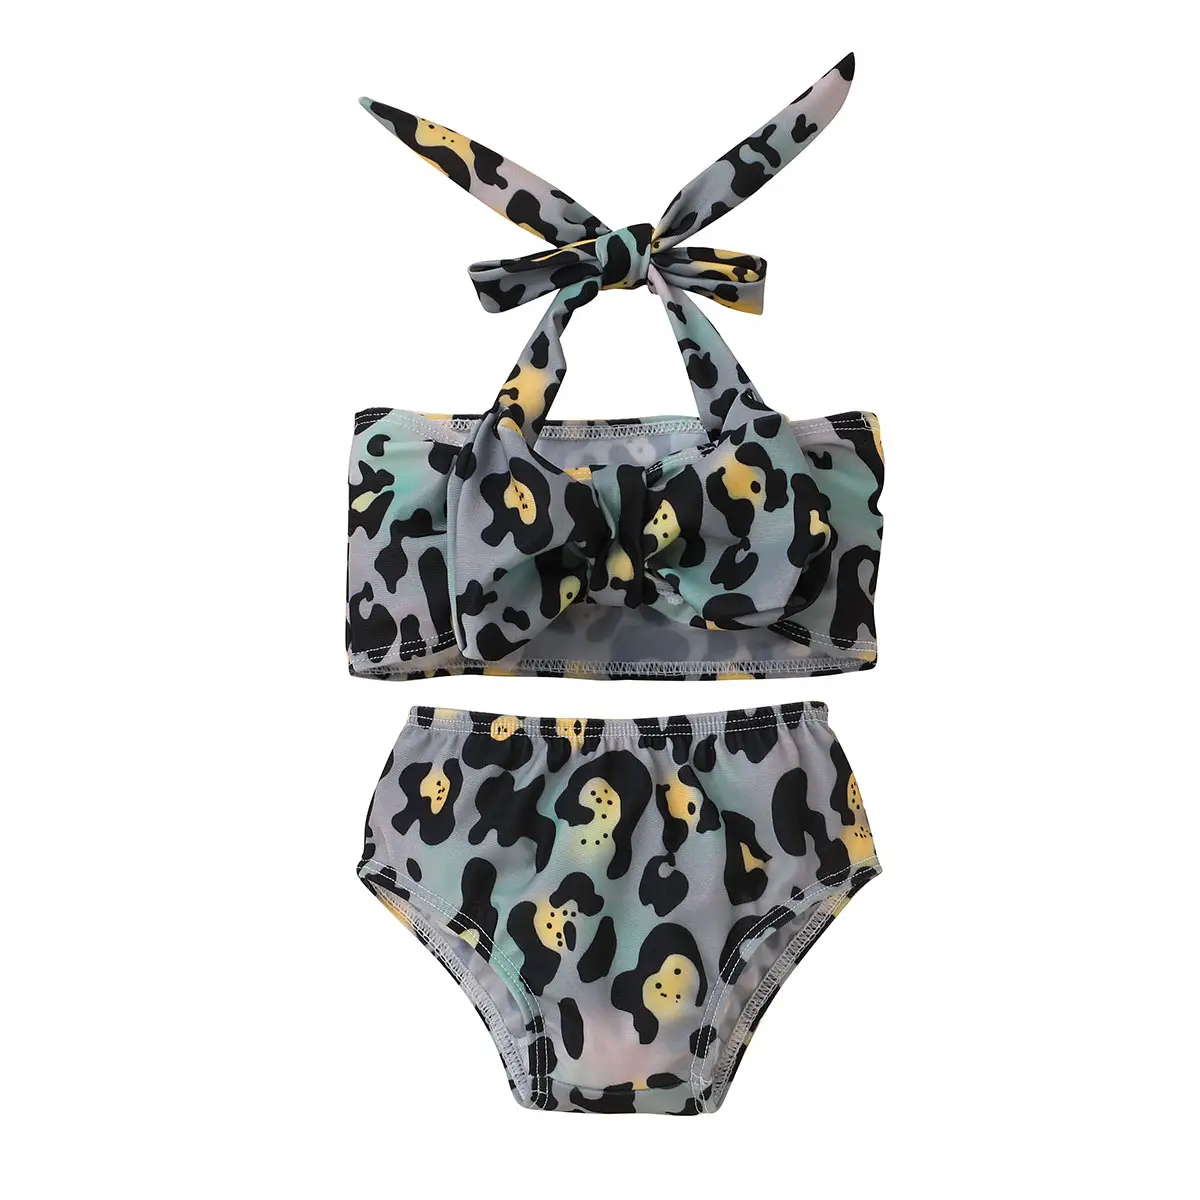 Boutique Fashion Zweiteiliges Bikini-Set Kinder Leopard Bow Design Condole Bade bekleidung Sexy Cute Toddler Girls Bademode Badeanzug für Bab